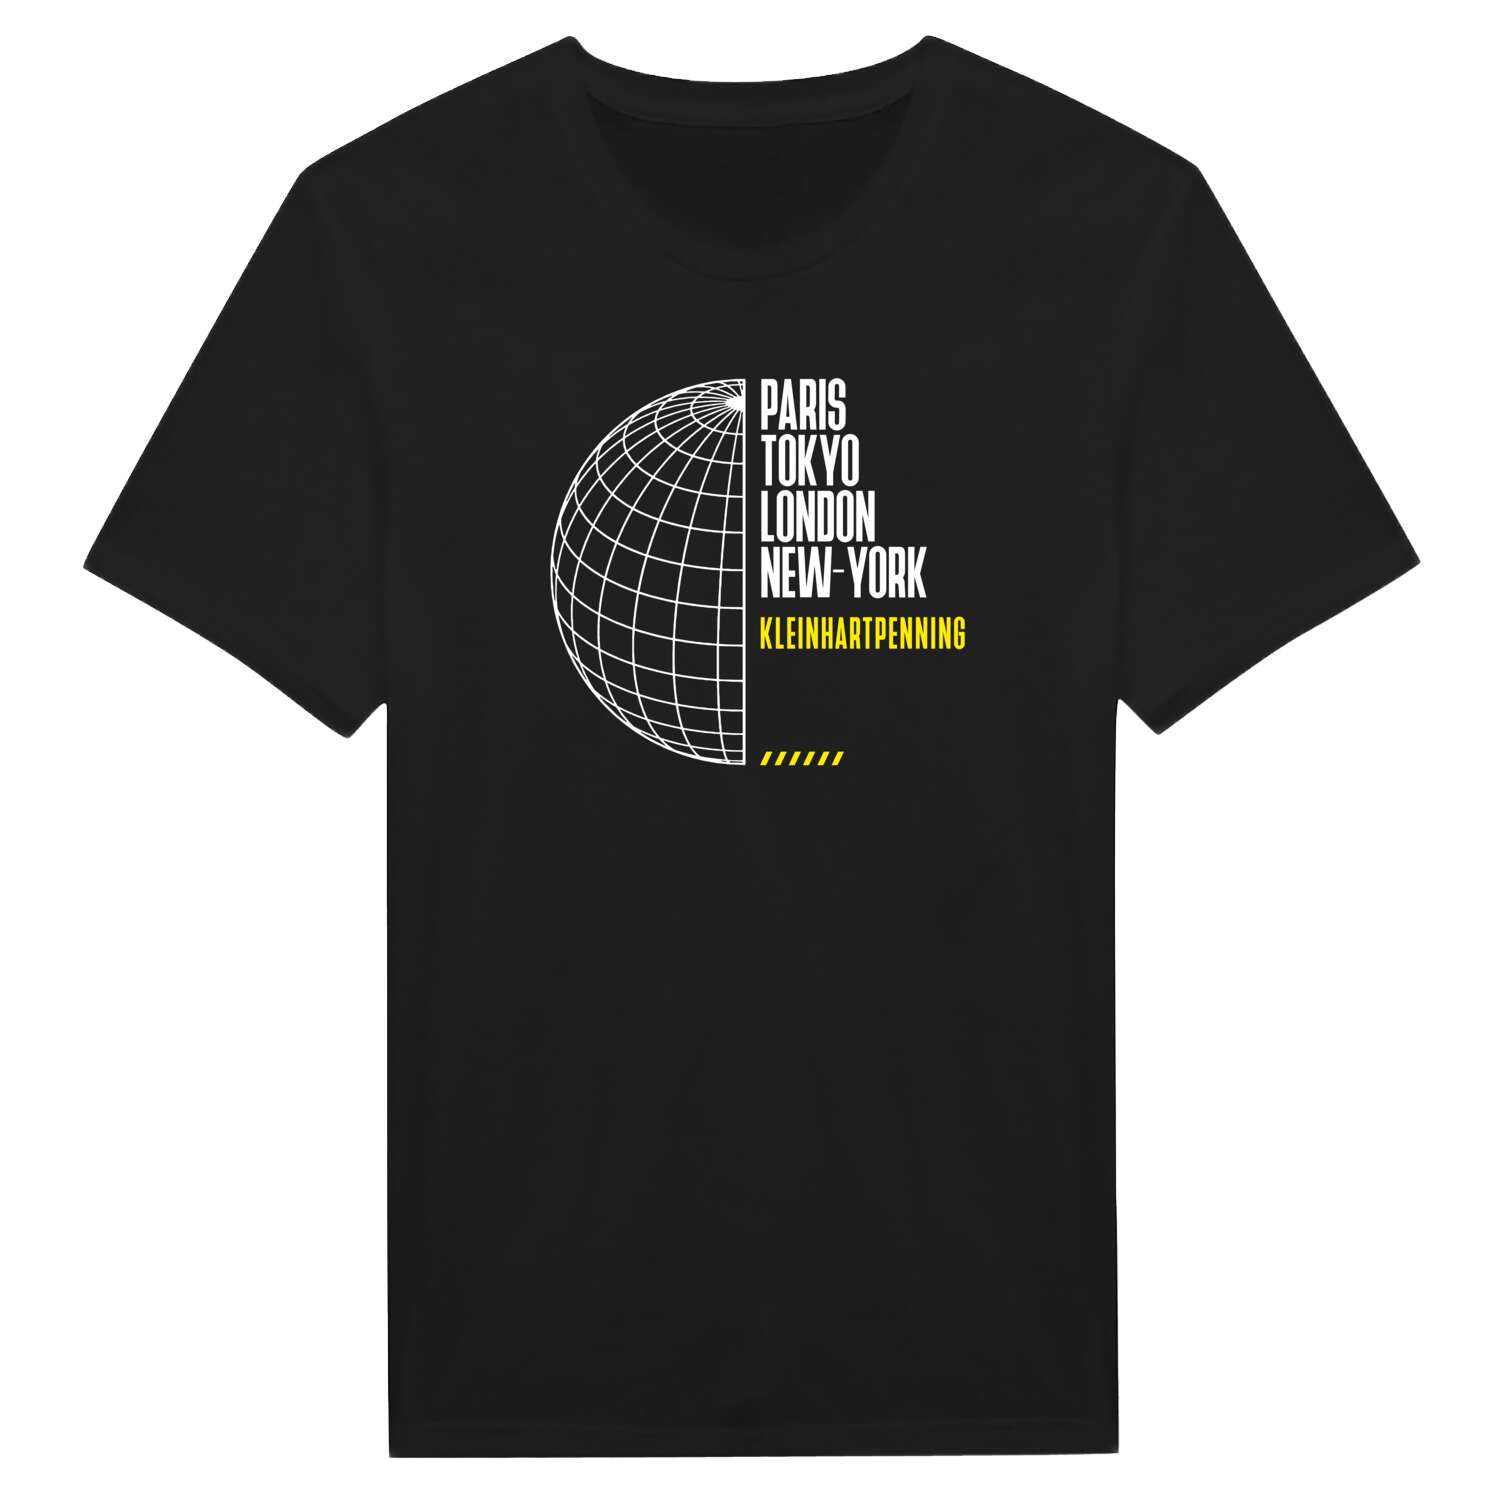 Kleinhartpenning T-Shirt »Paris Tokyo London«